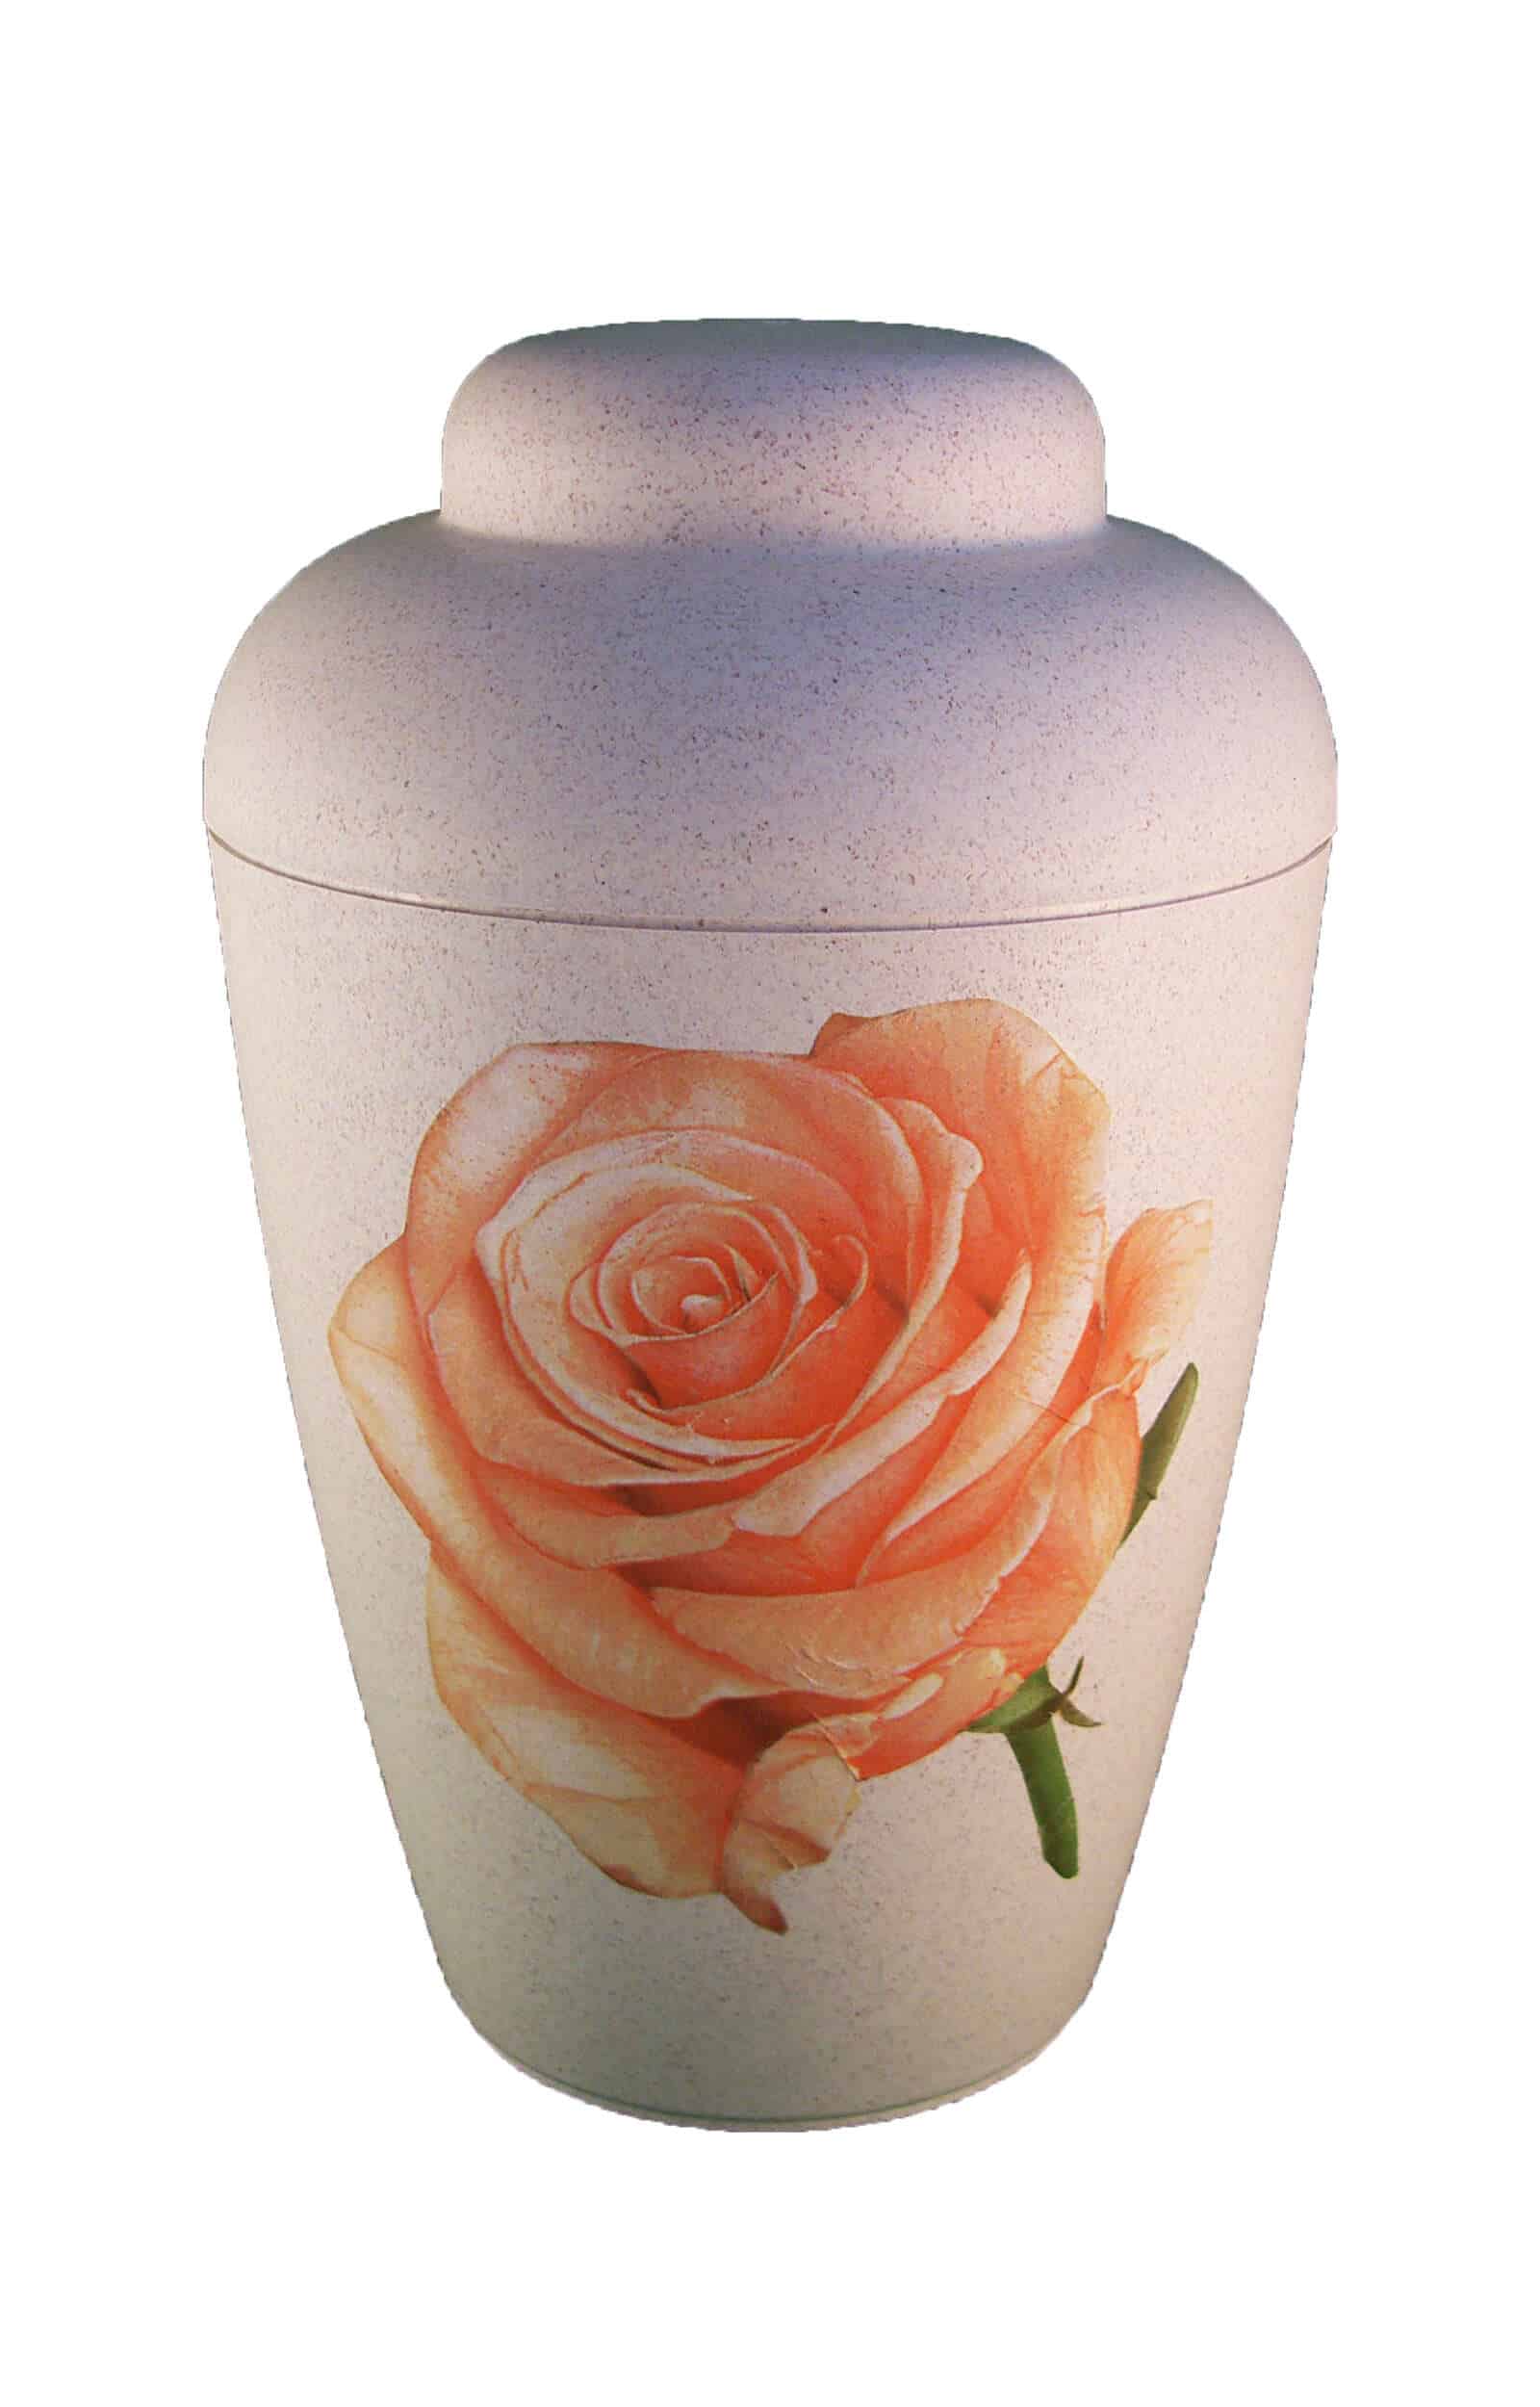 Bio Urne vale weiß mit Rose - urne kaufen